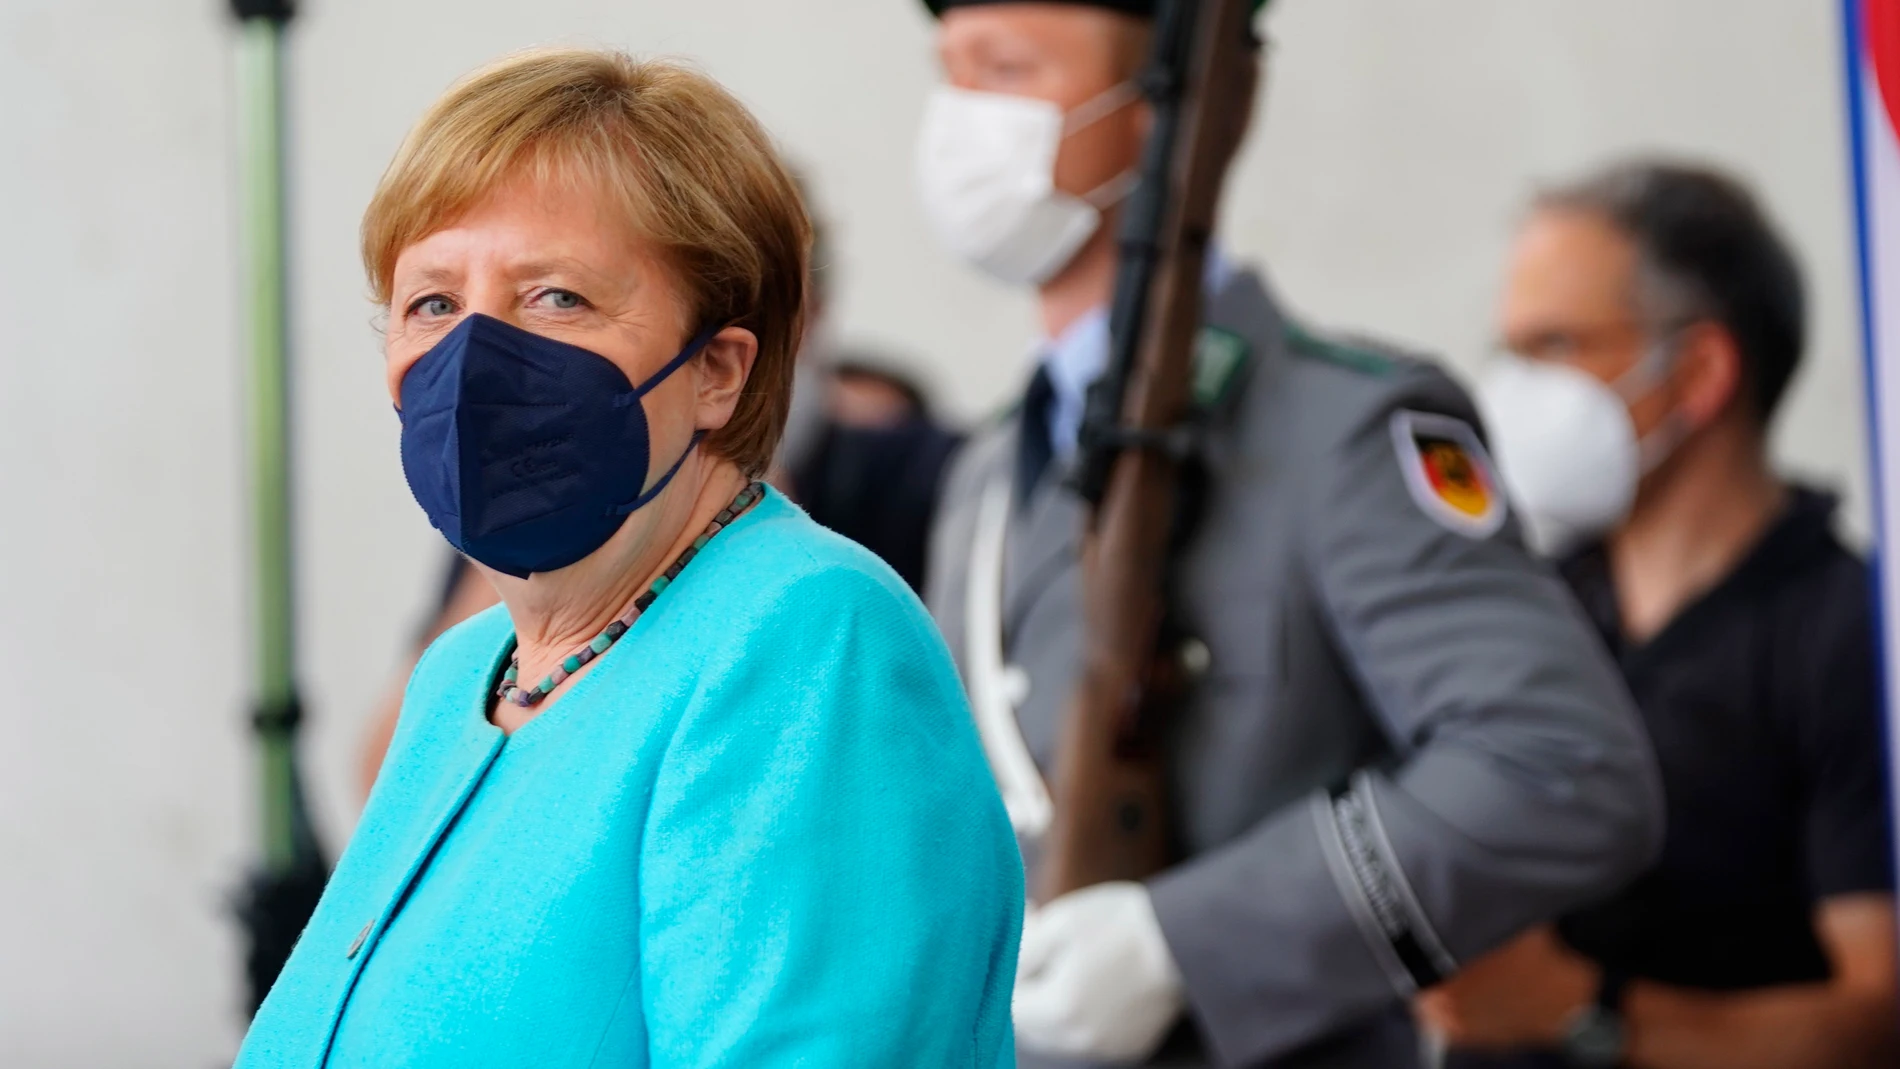 La canciller Angela Merkel dejará la política tras las elecciones del 26 de septiembre